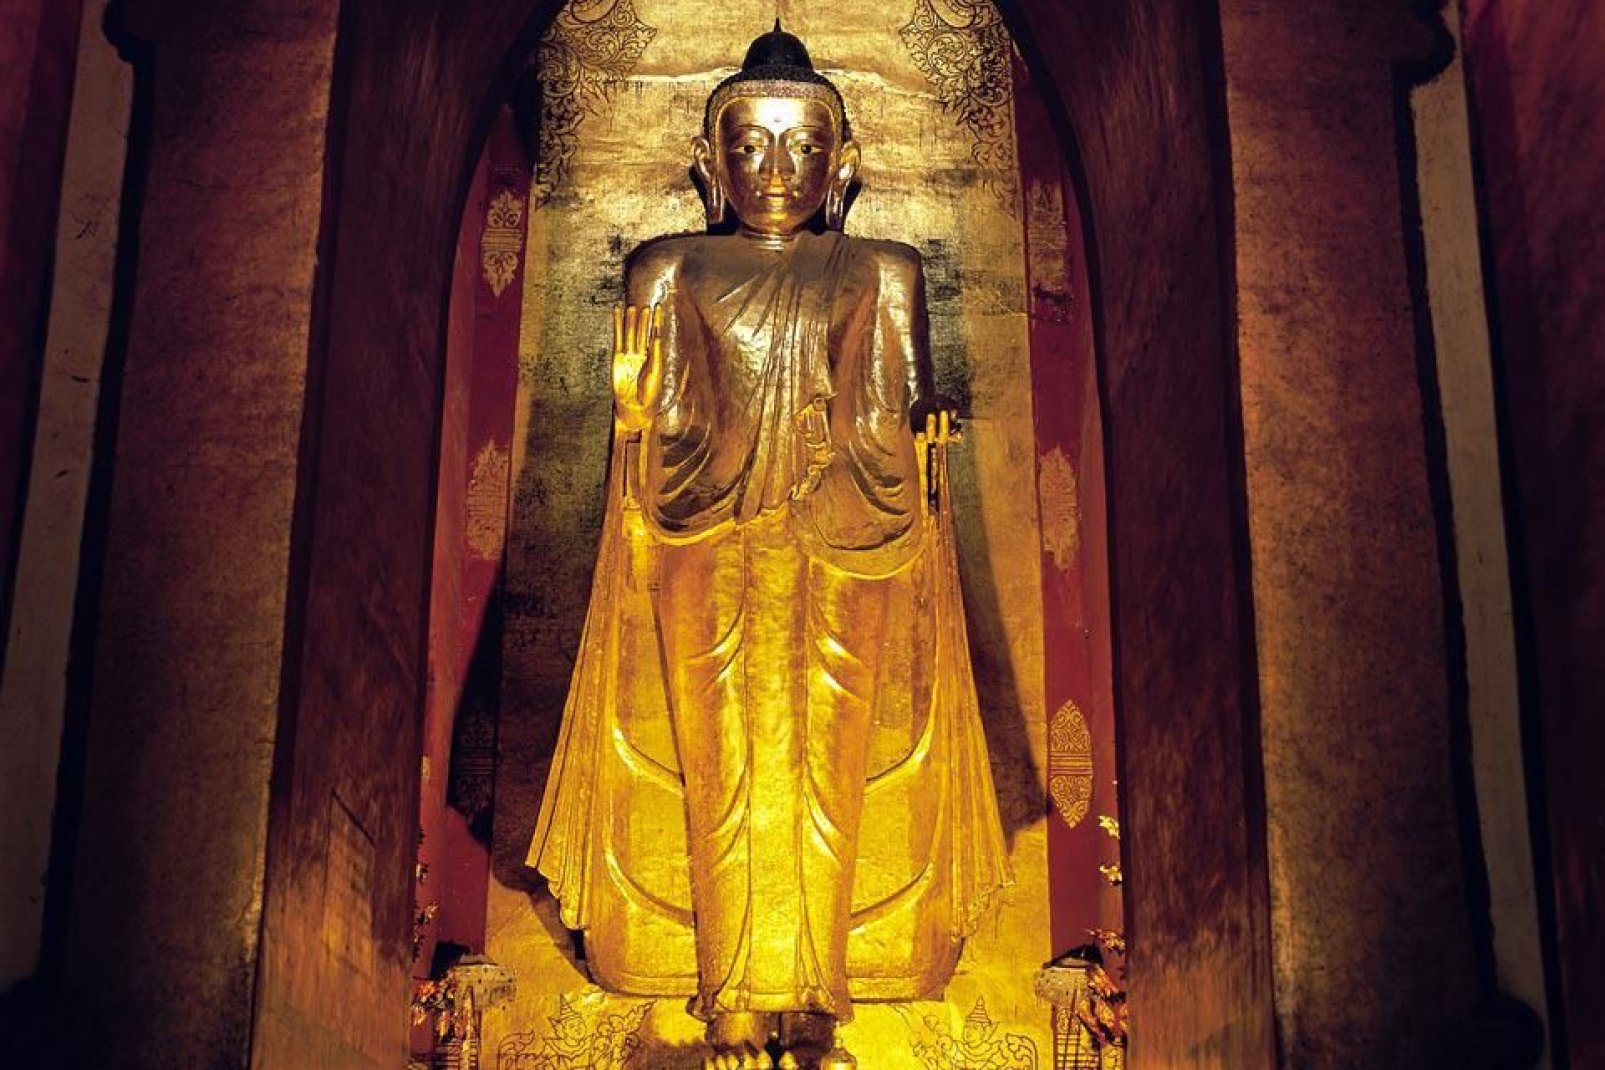 Die Pagode Mahabodi mit besonders origineller Architektur besitzt eine Auenfassade mit zahlreichen Nischen, sitzenden Buddhastatuen und einem Fries.